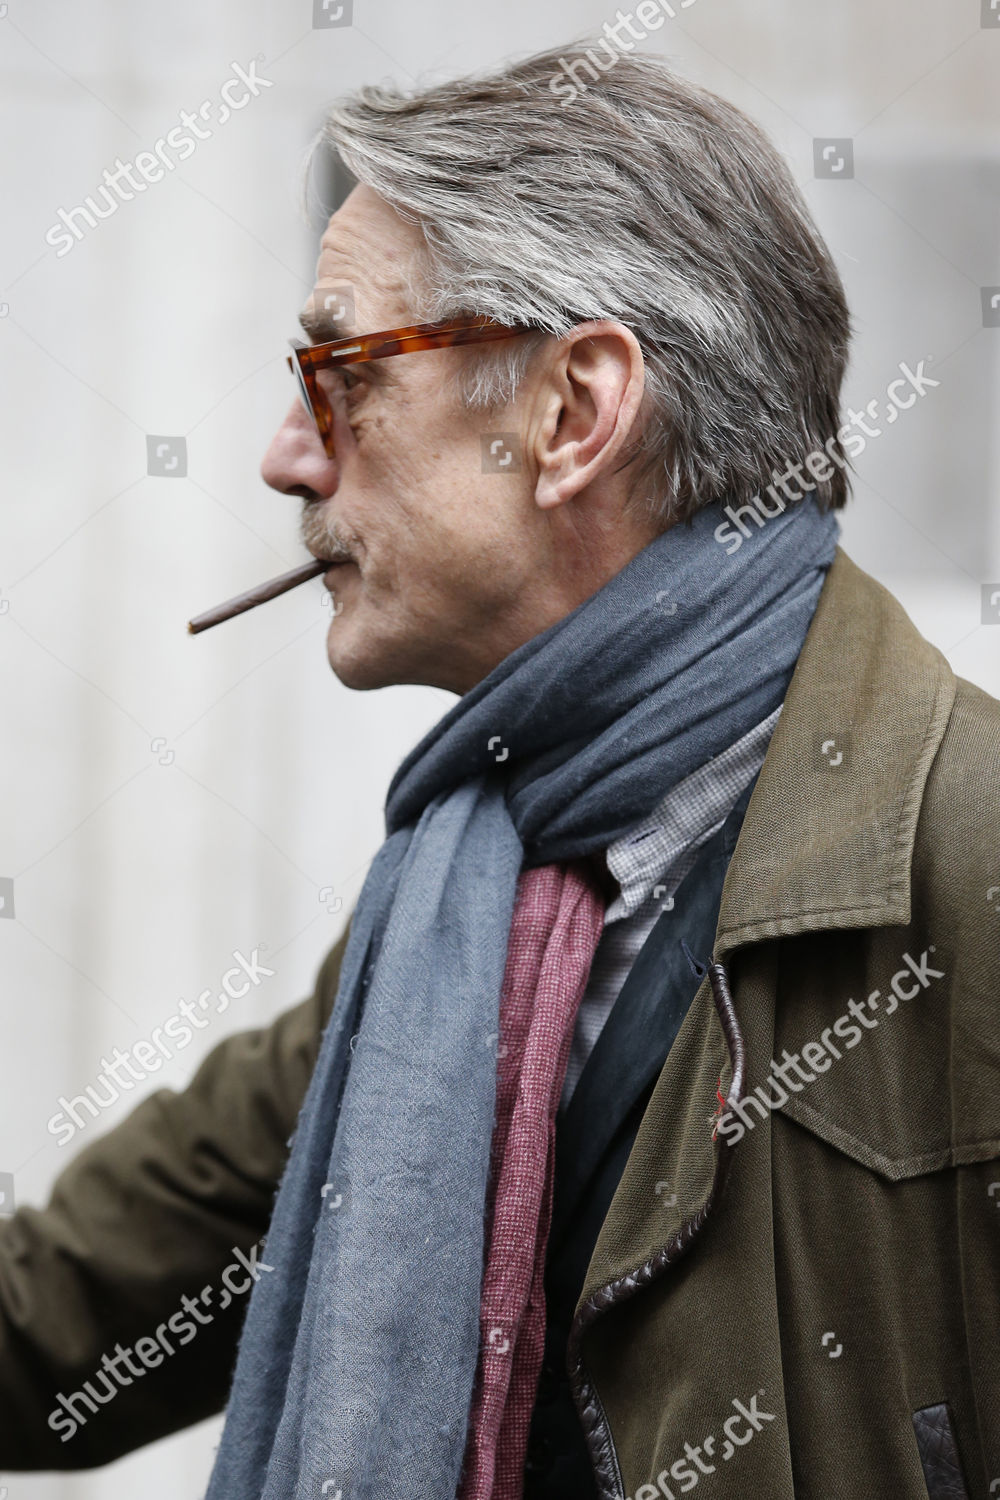 Jeremy Irons aan het roken
